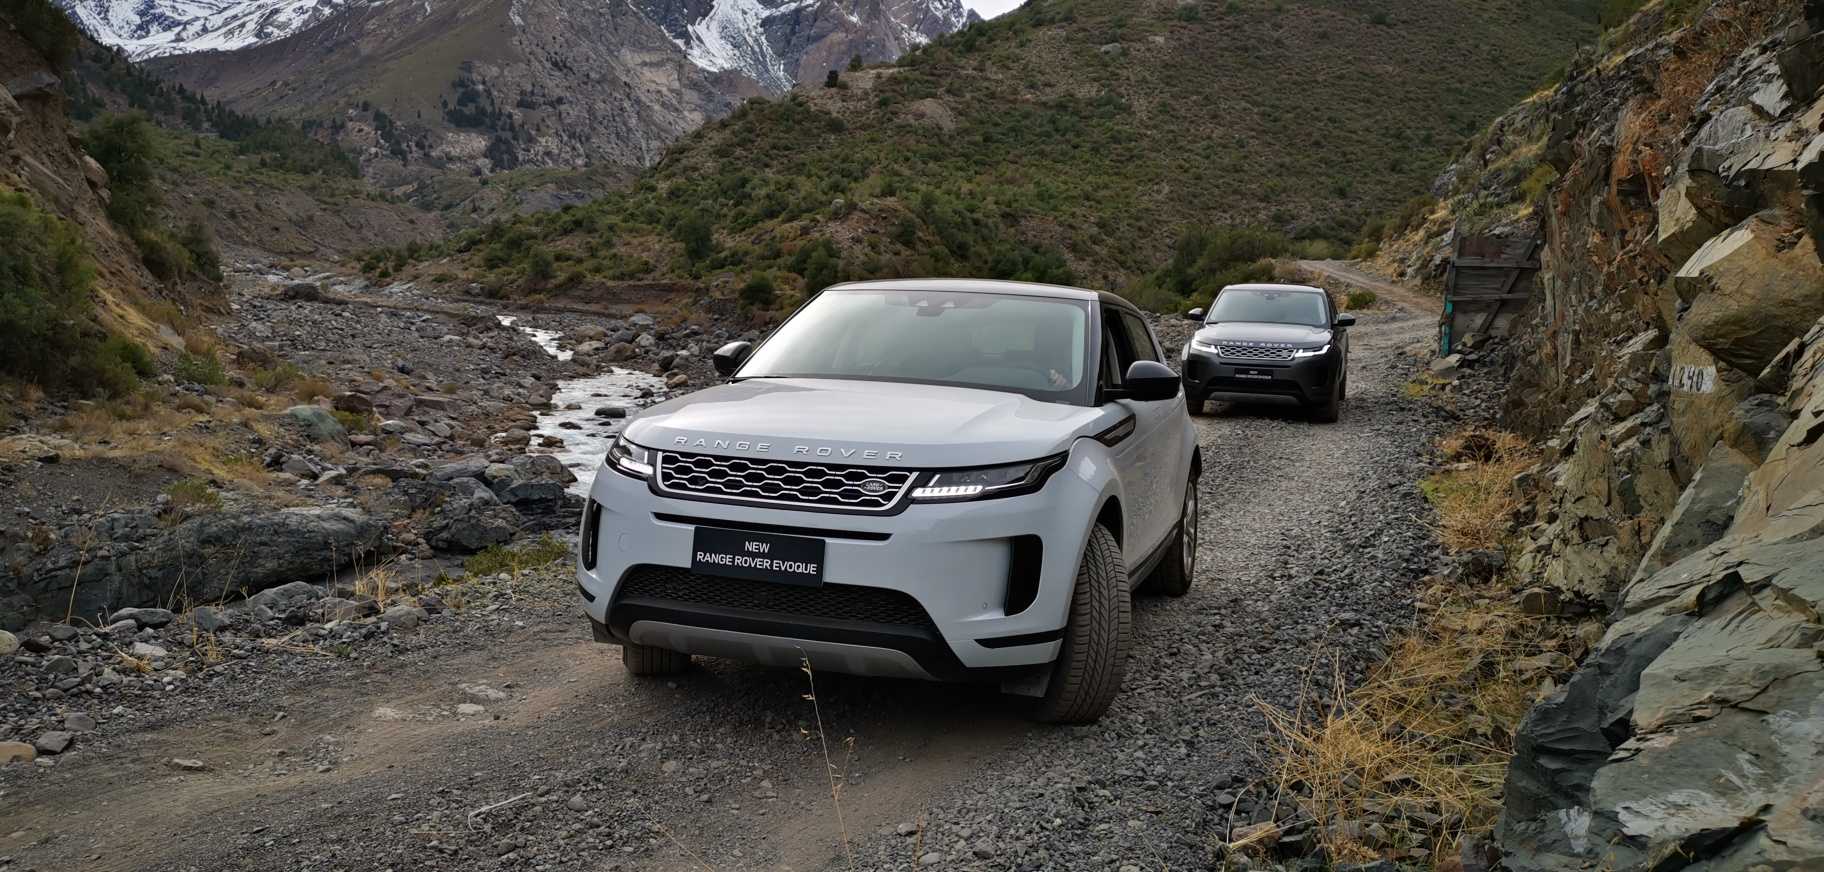 Prueba en ruta del nuevo Range Rover Evoque - De la ciudad a la montaña -  Rutamotor